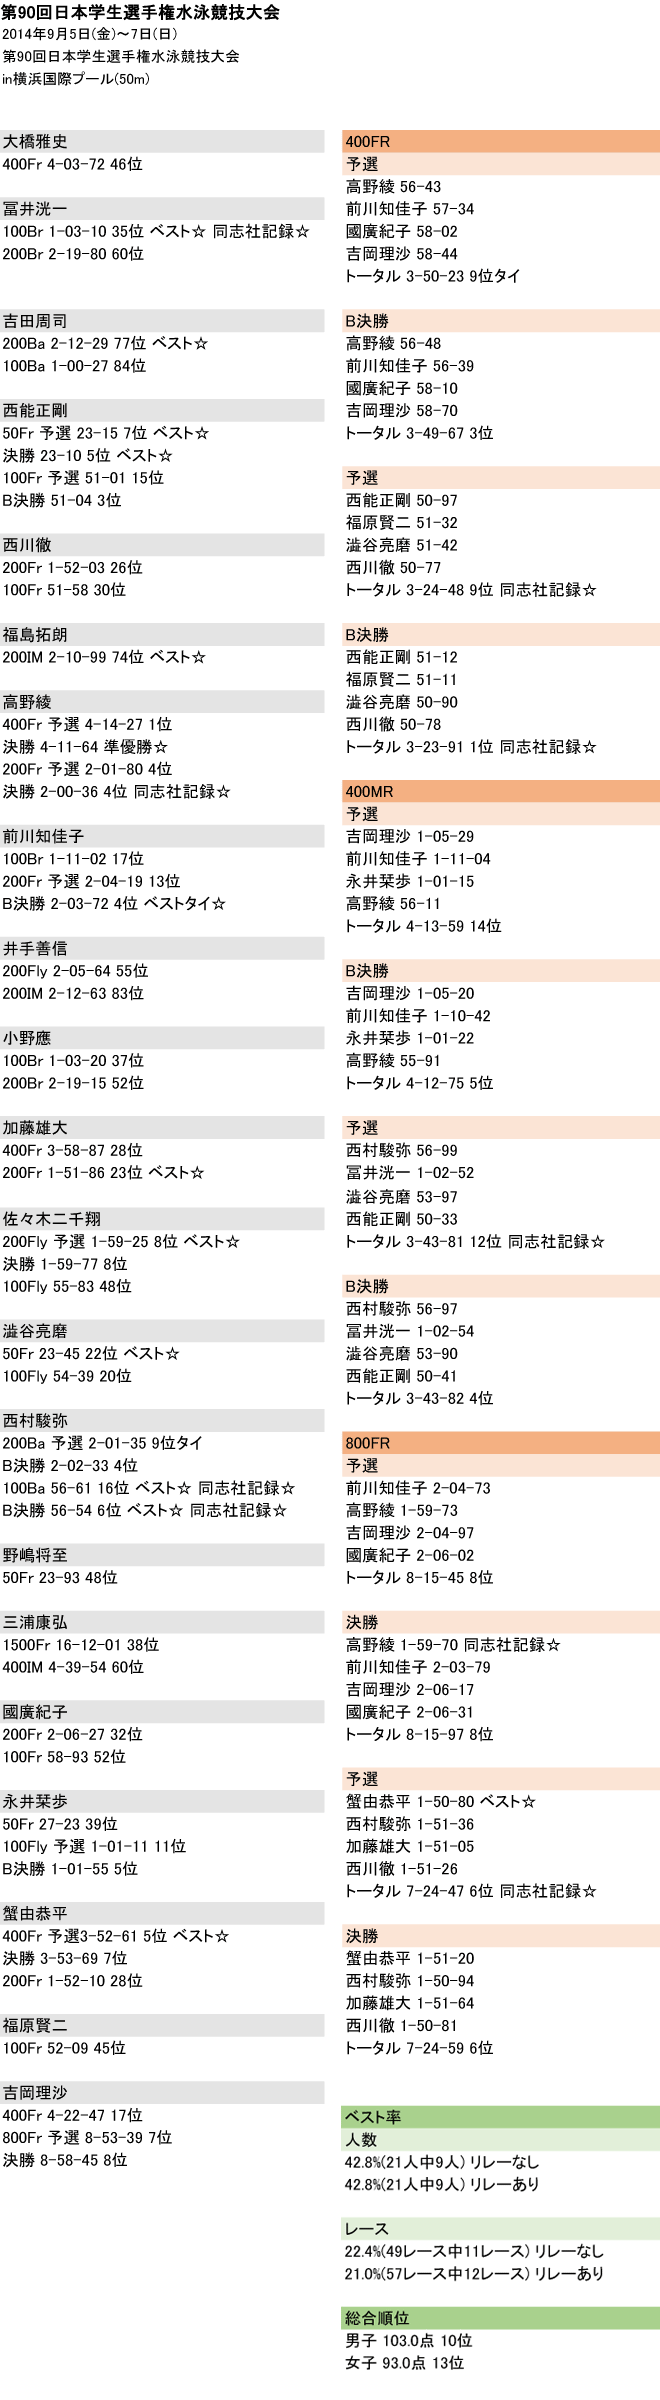 2014 日本学生選手権